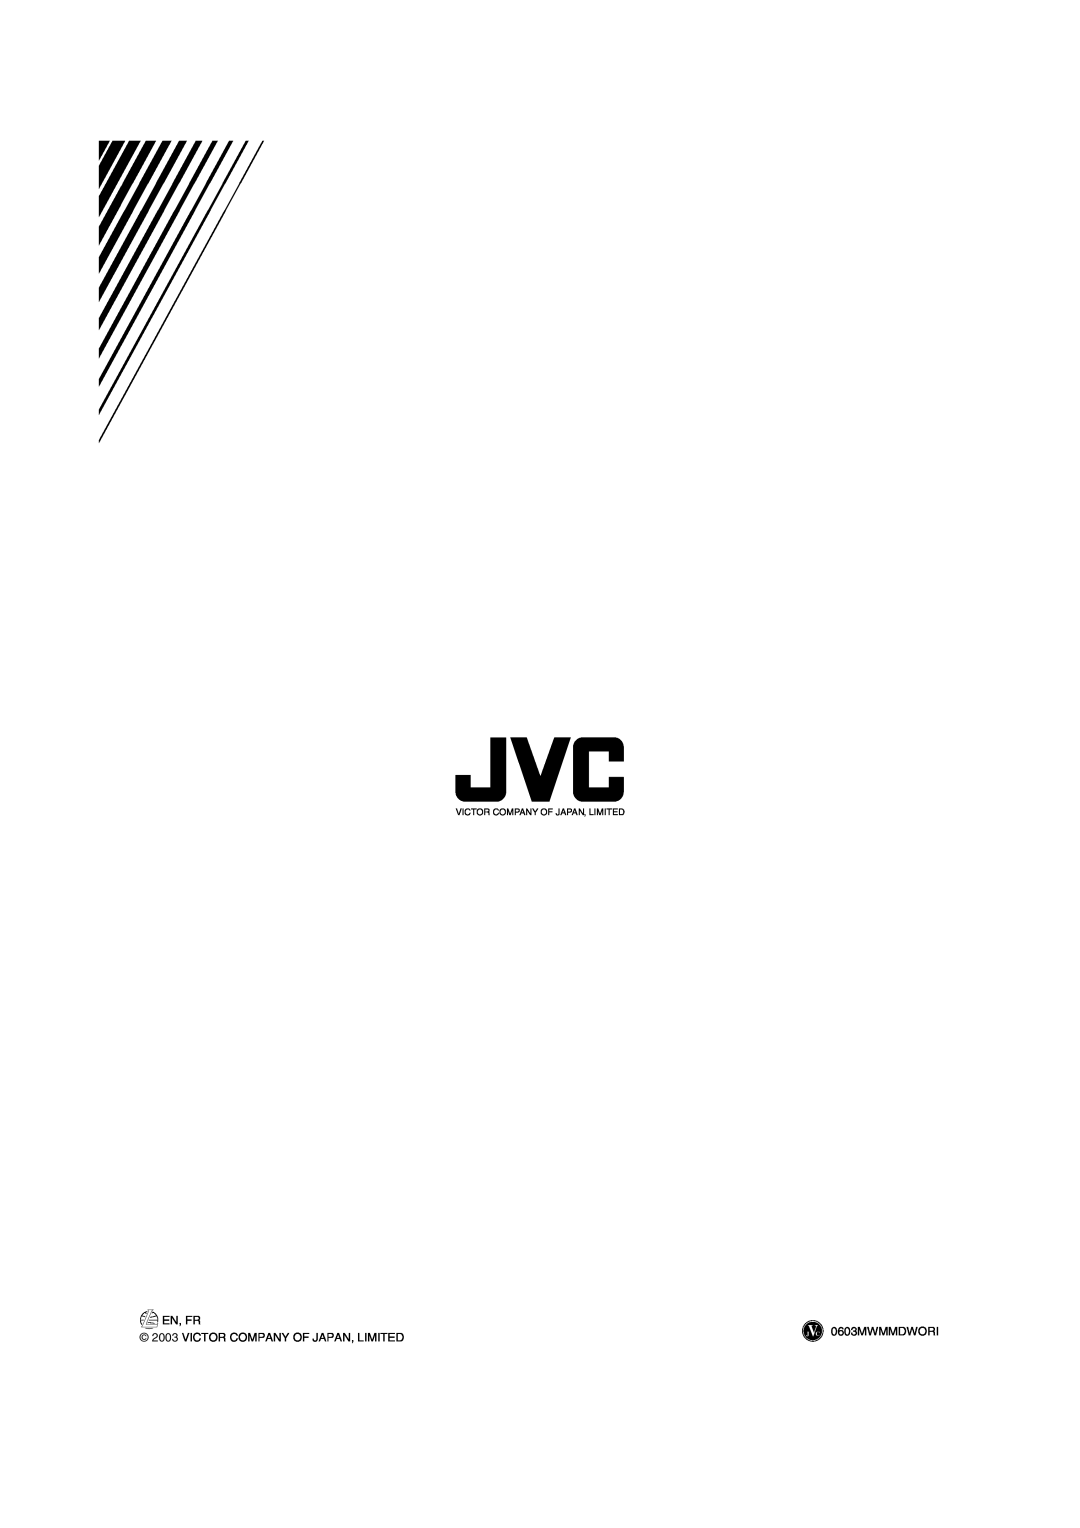 JVC FS-H10 manual En, Fr, 0603MWMMDWORI, Victor Company Of Japan, Limited 